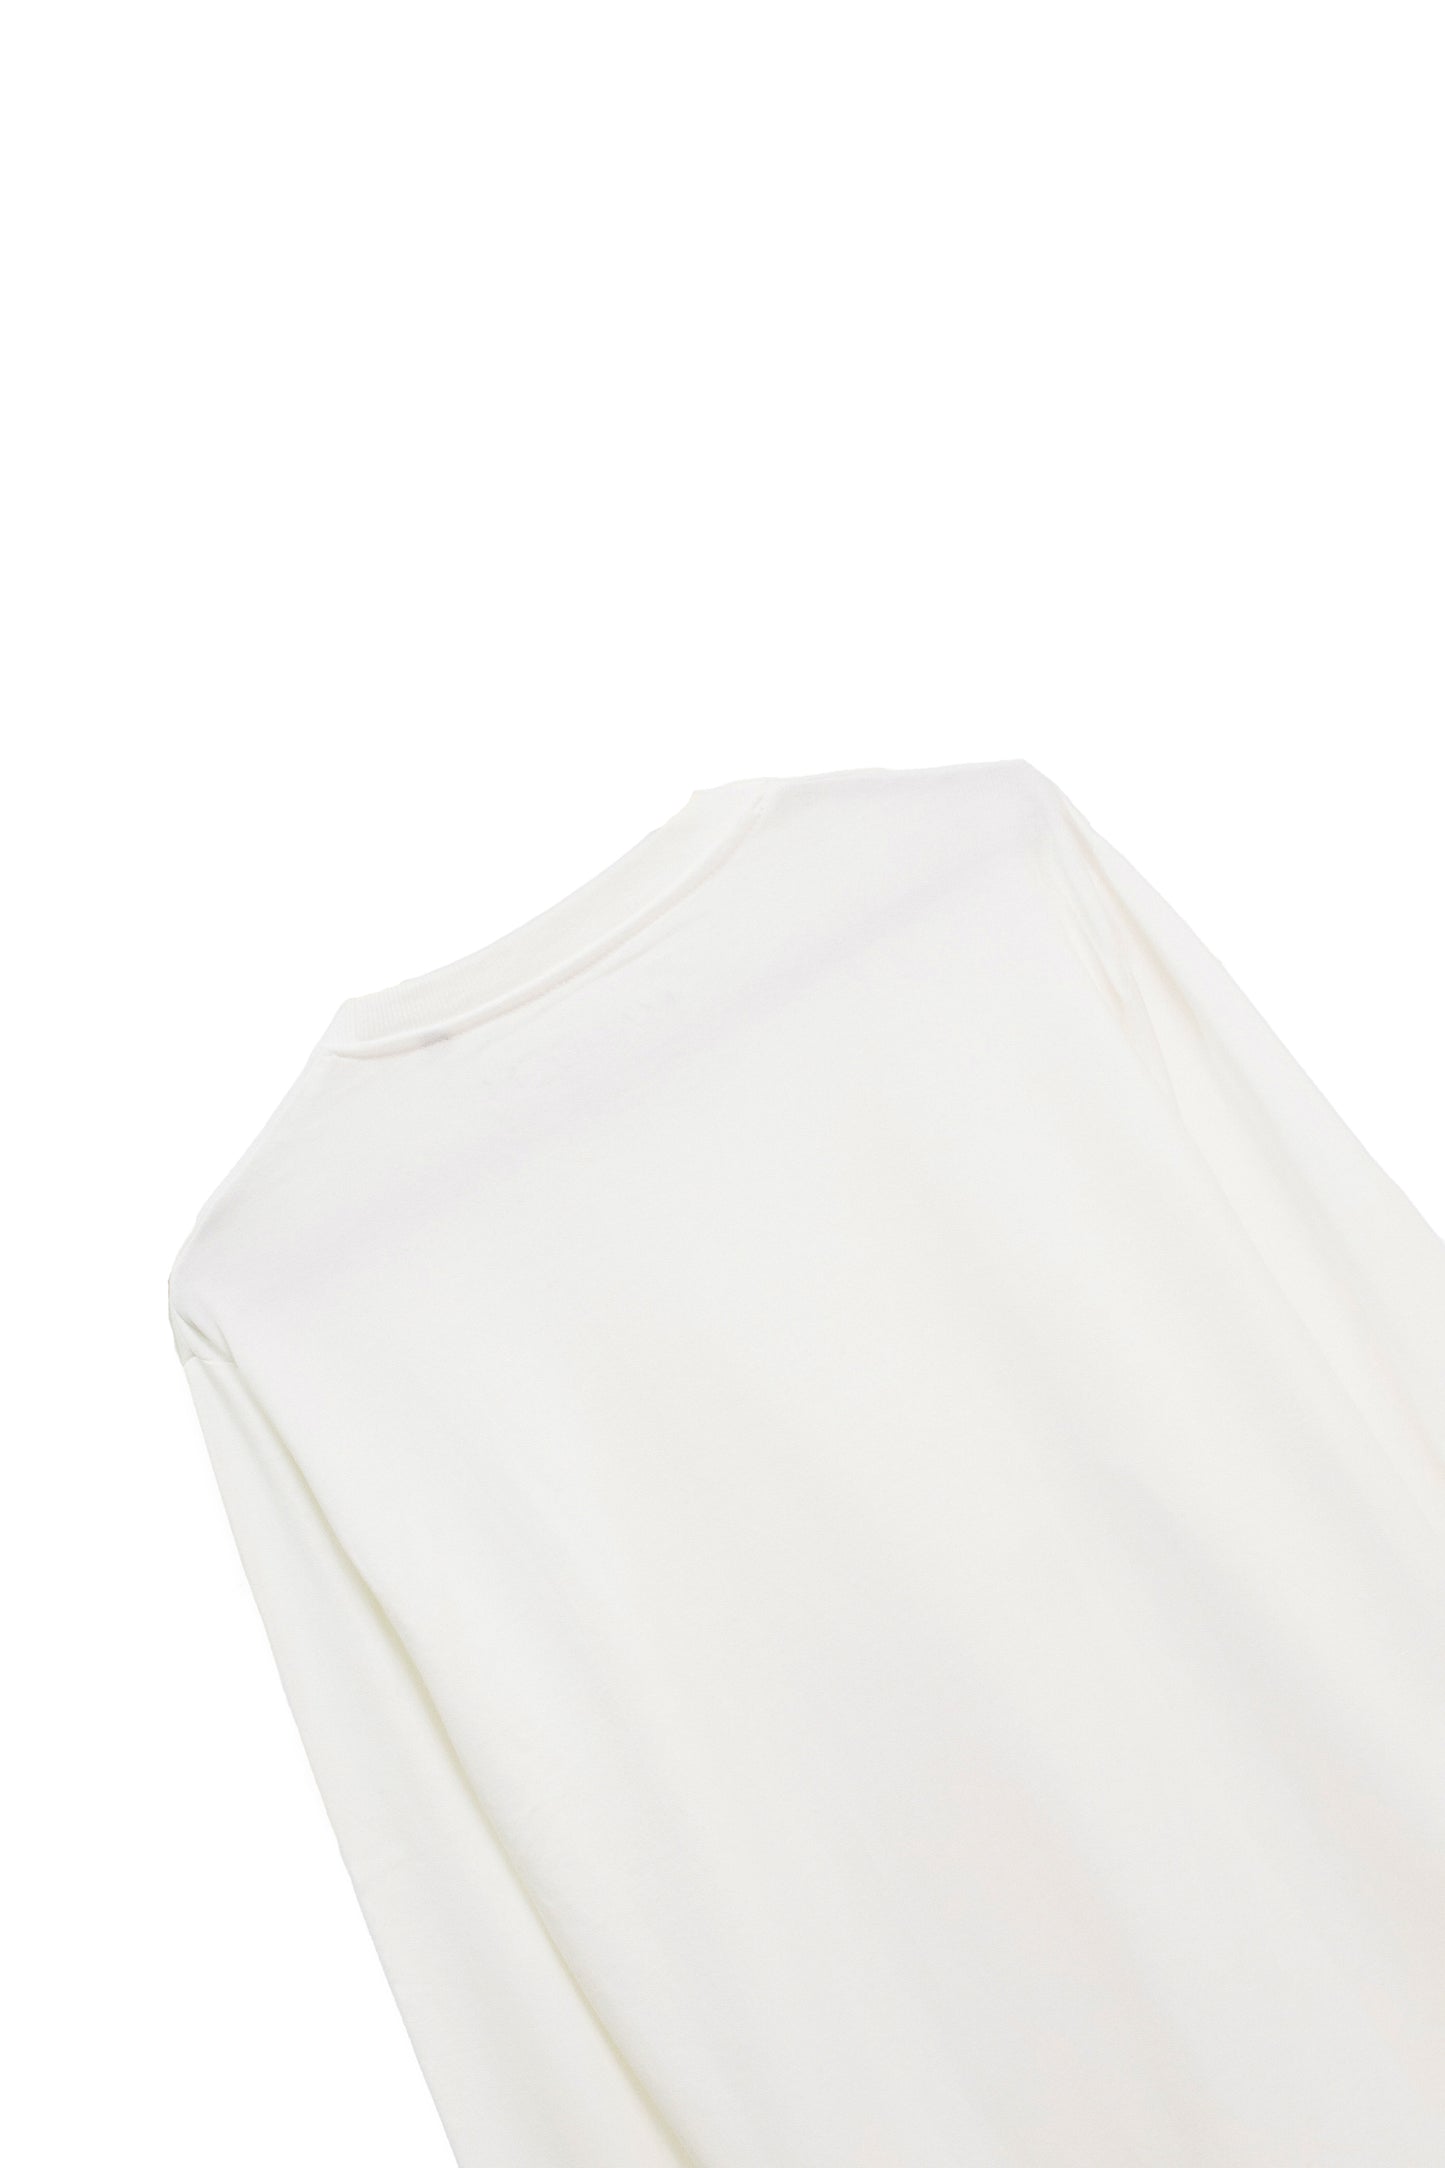 MANDEM ELECTRIFIED WHITE Sweatshirt (UNISEX)